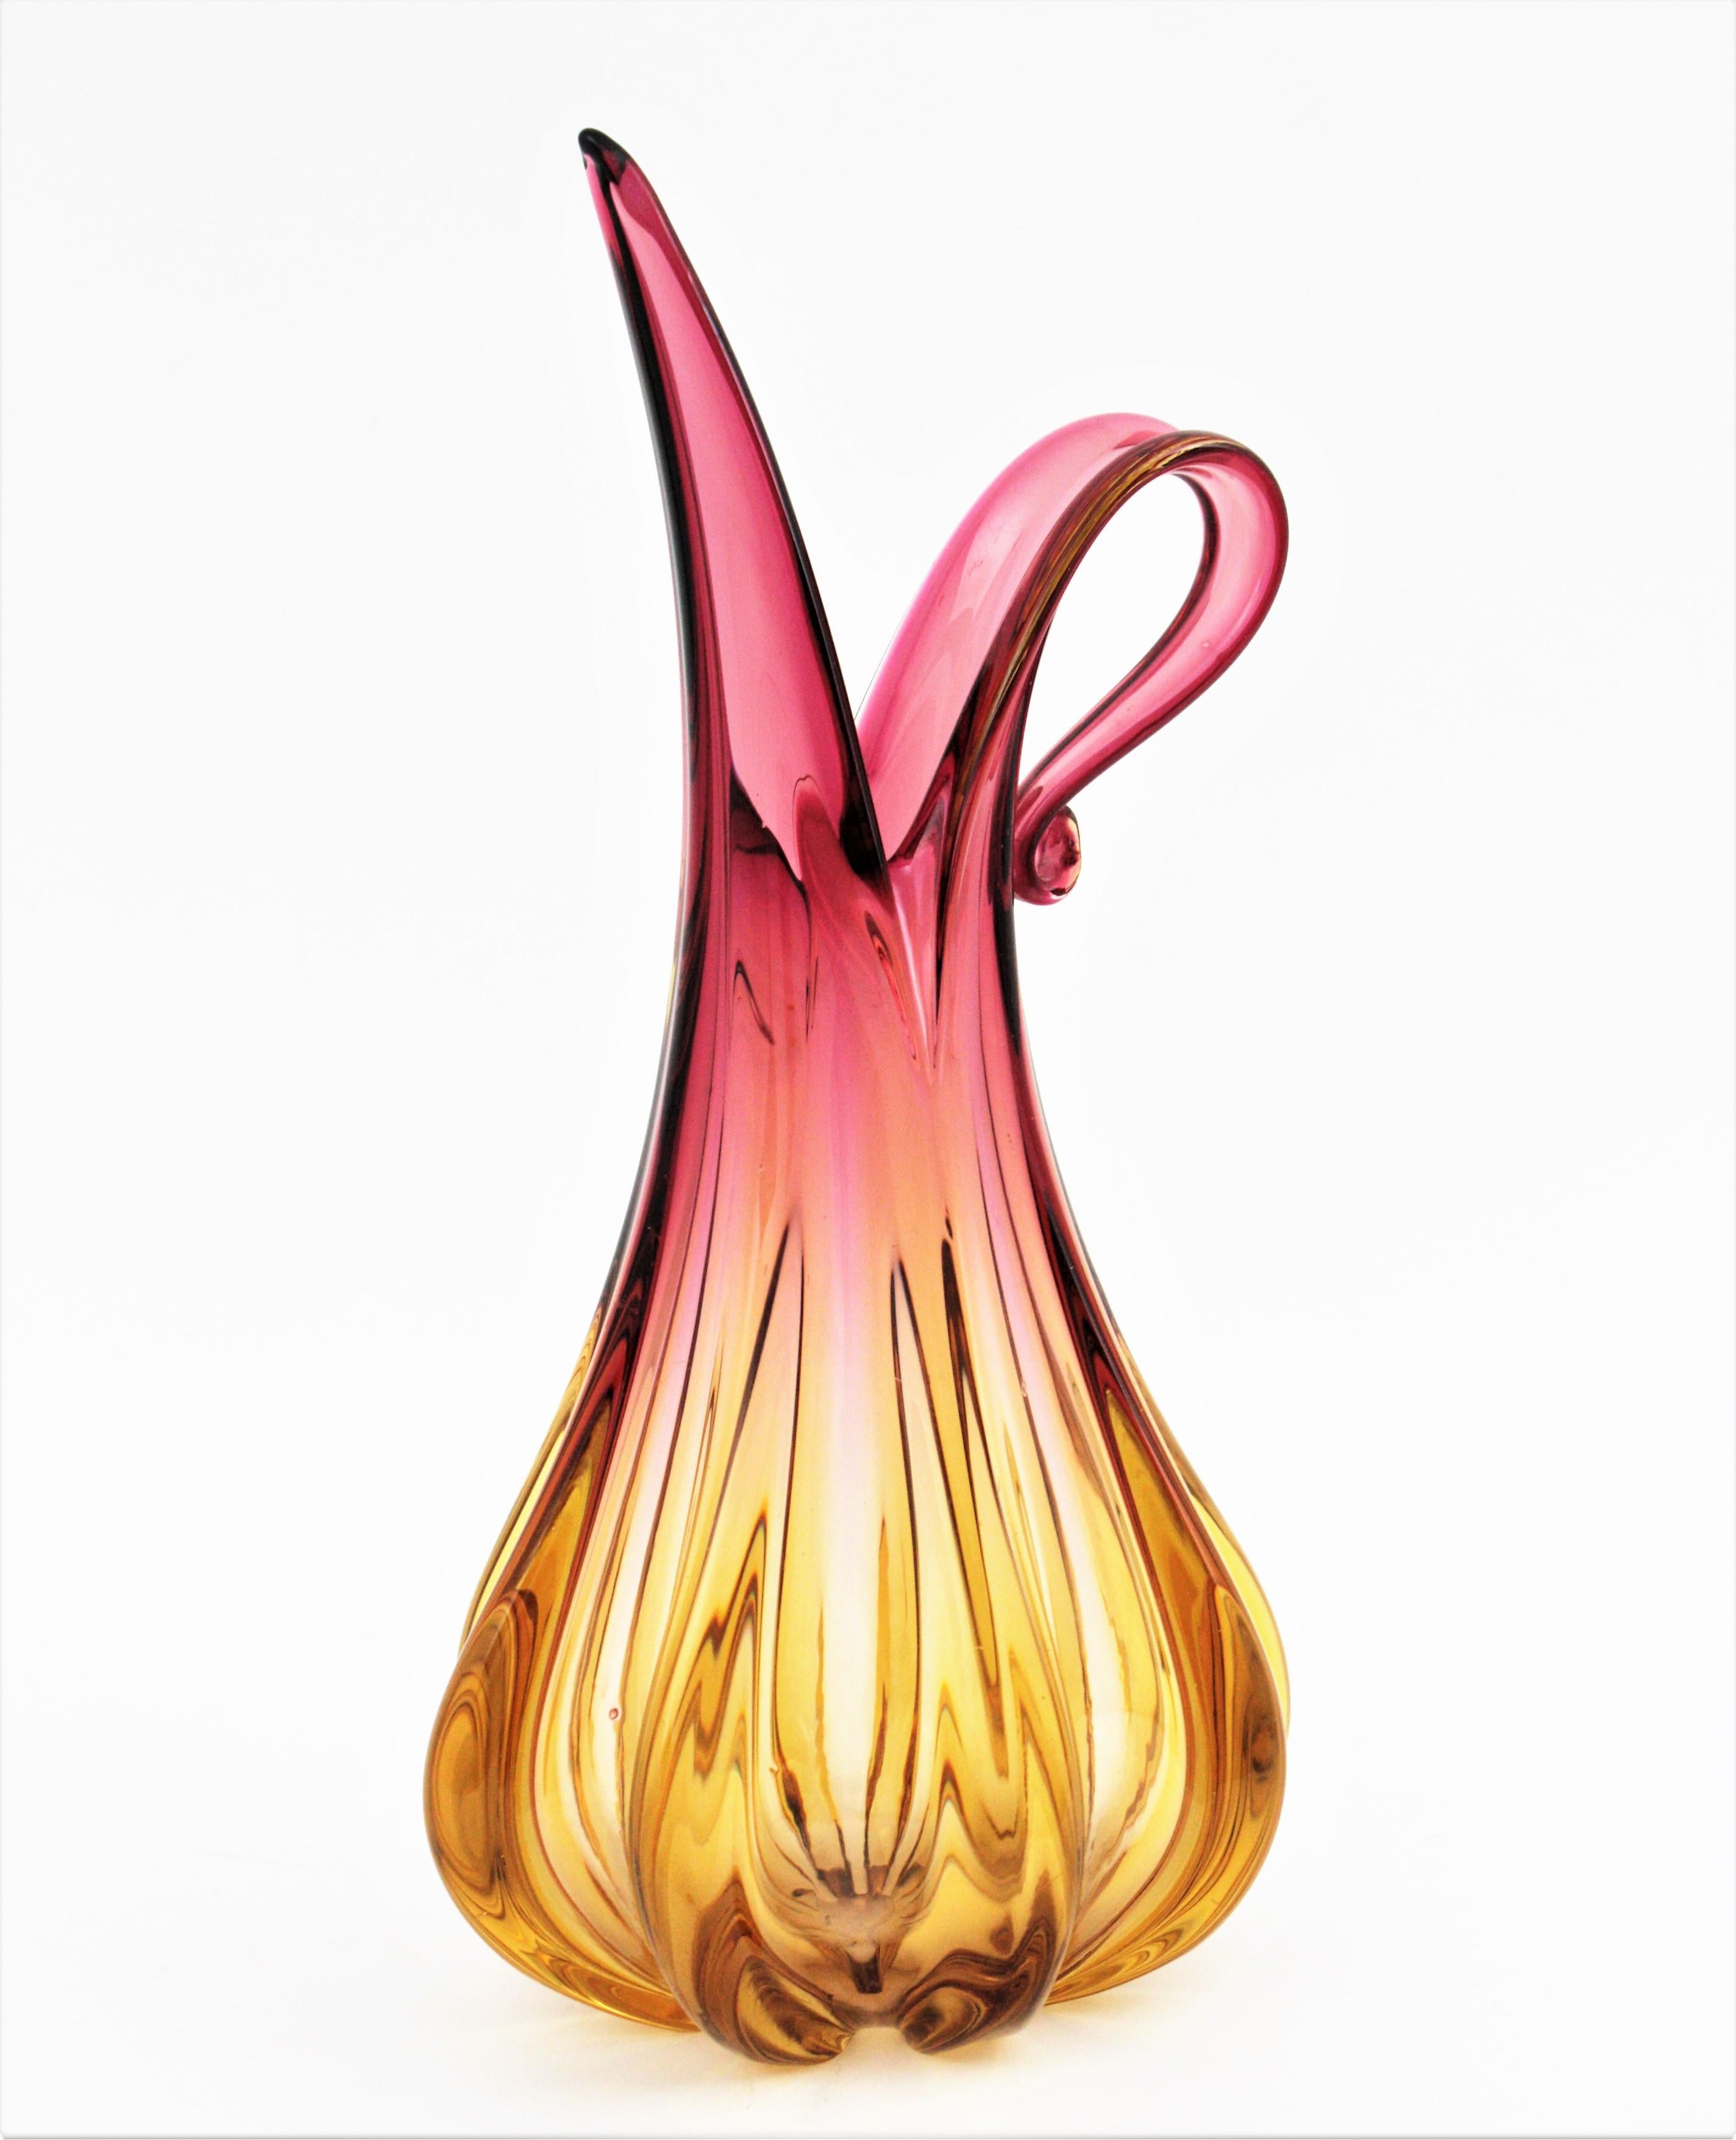 Skulpturale Murano Vase in Form eines Kruges aus rosa und bernsteinfarbenem Glas. Entworfen von Flavio Poli und hergestellt von Seguso Vetri d'Arte. Italien, 1950er Jahre.
Großes Format.
Lebendige Farben in einem Farbverlauf von rosa bis